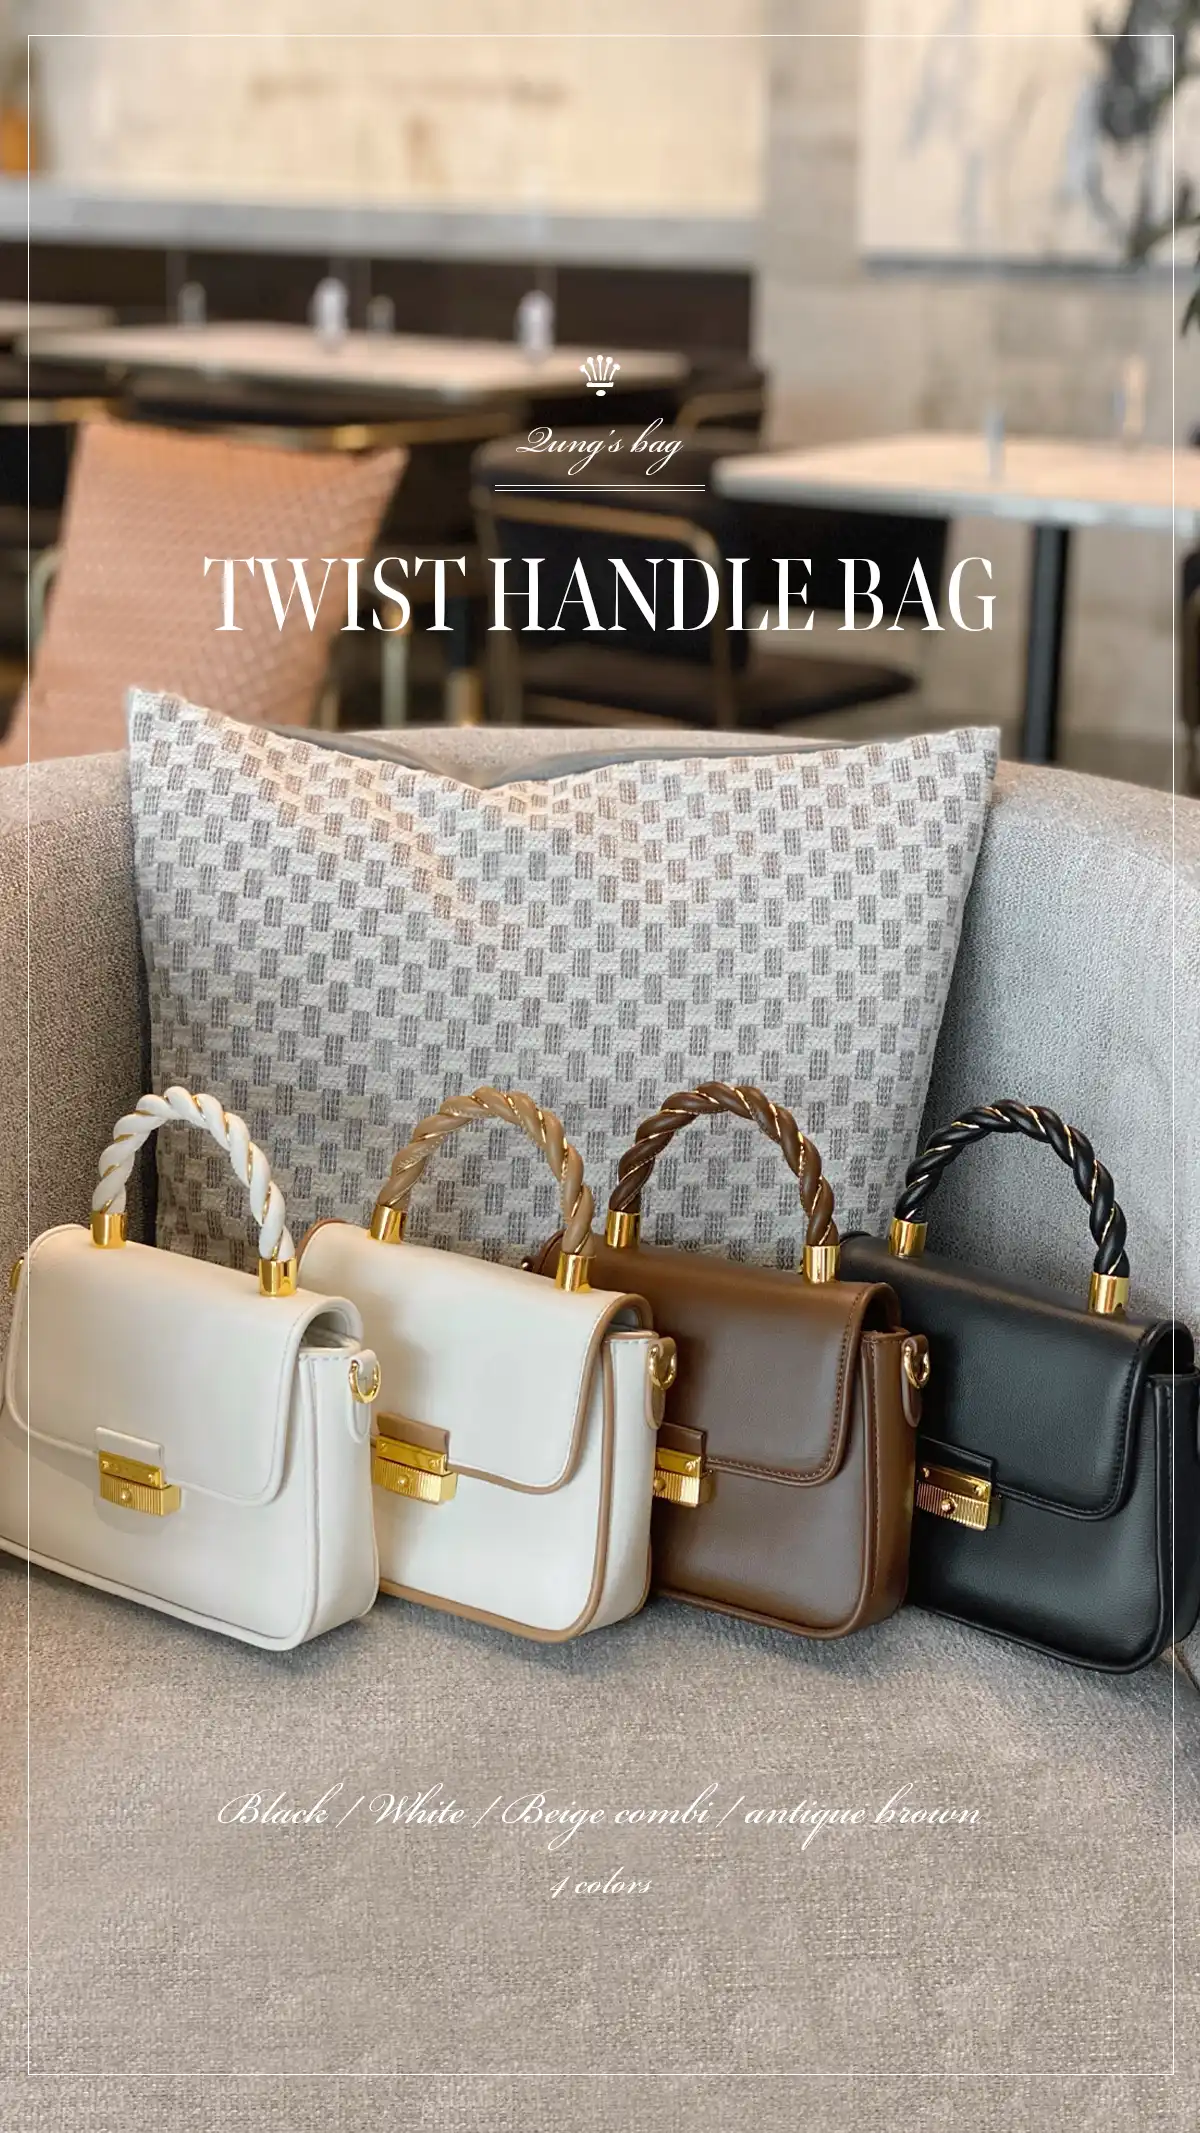 TWIST HANDLE BAG カラー: ブラック、ホワイト、ベージュコンビ、アンティークブラウン